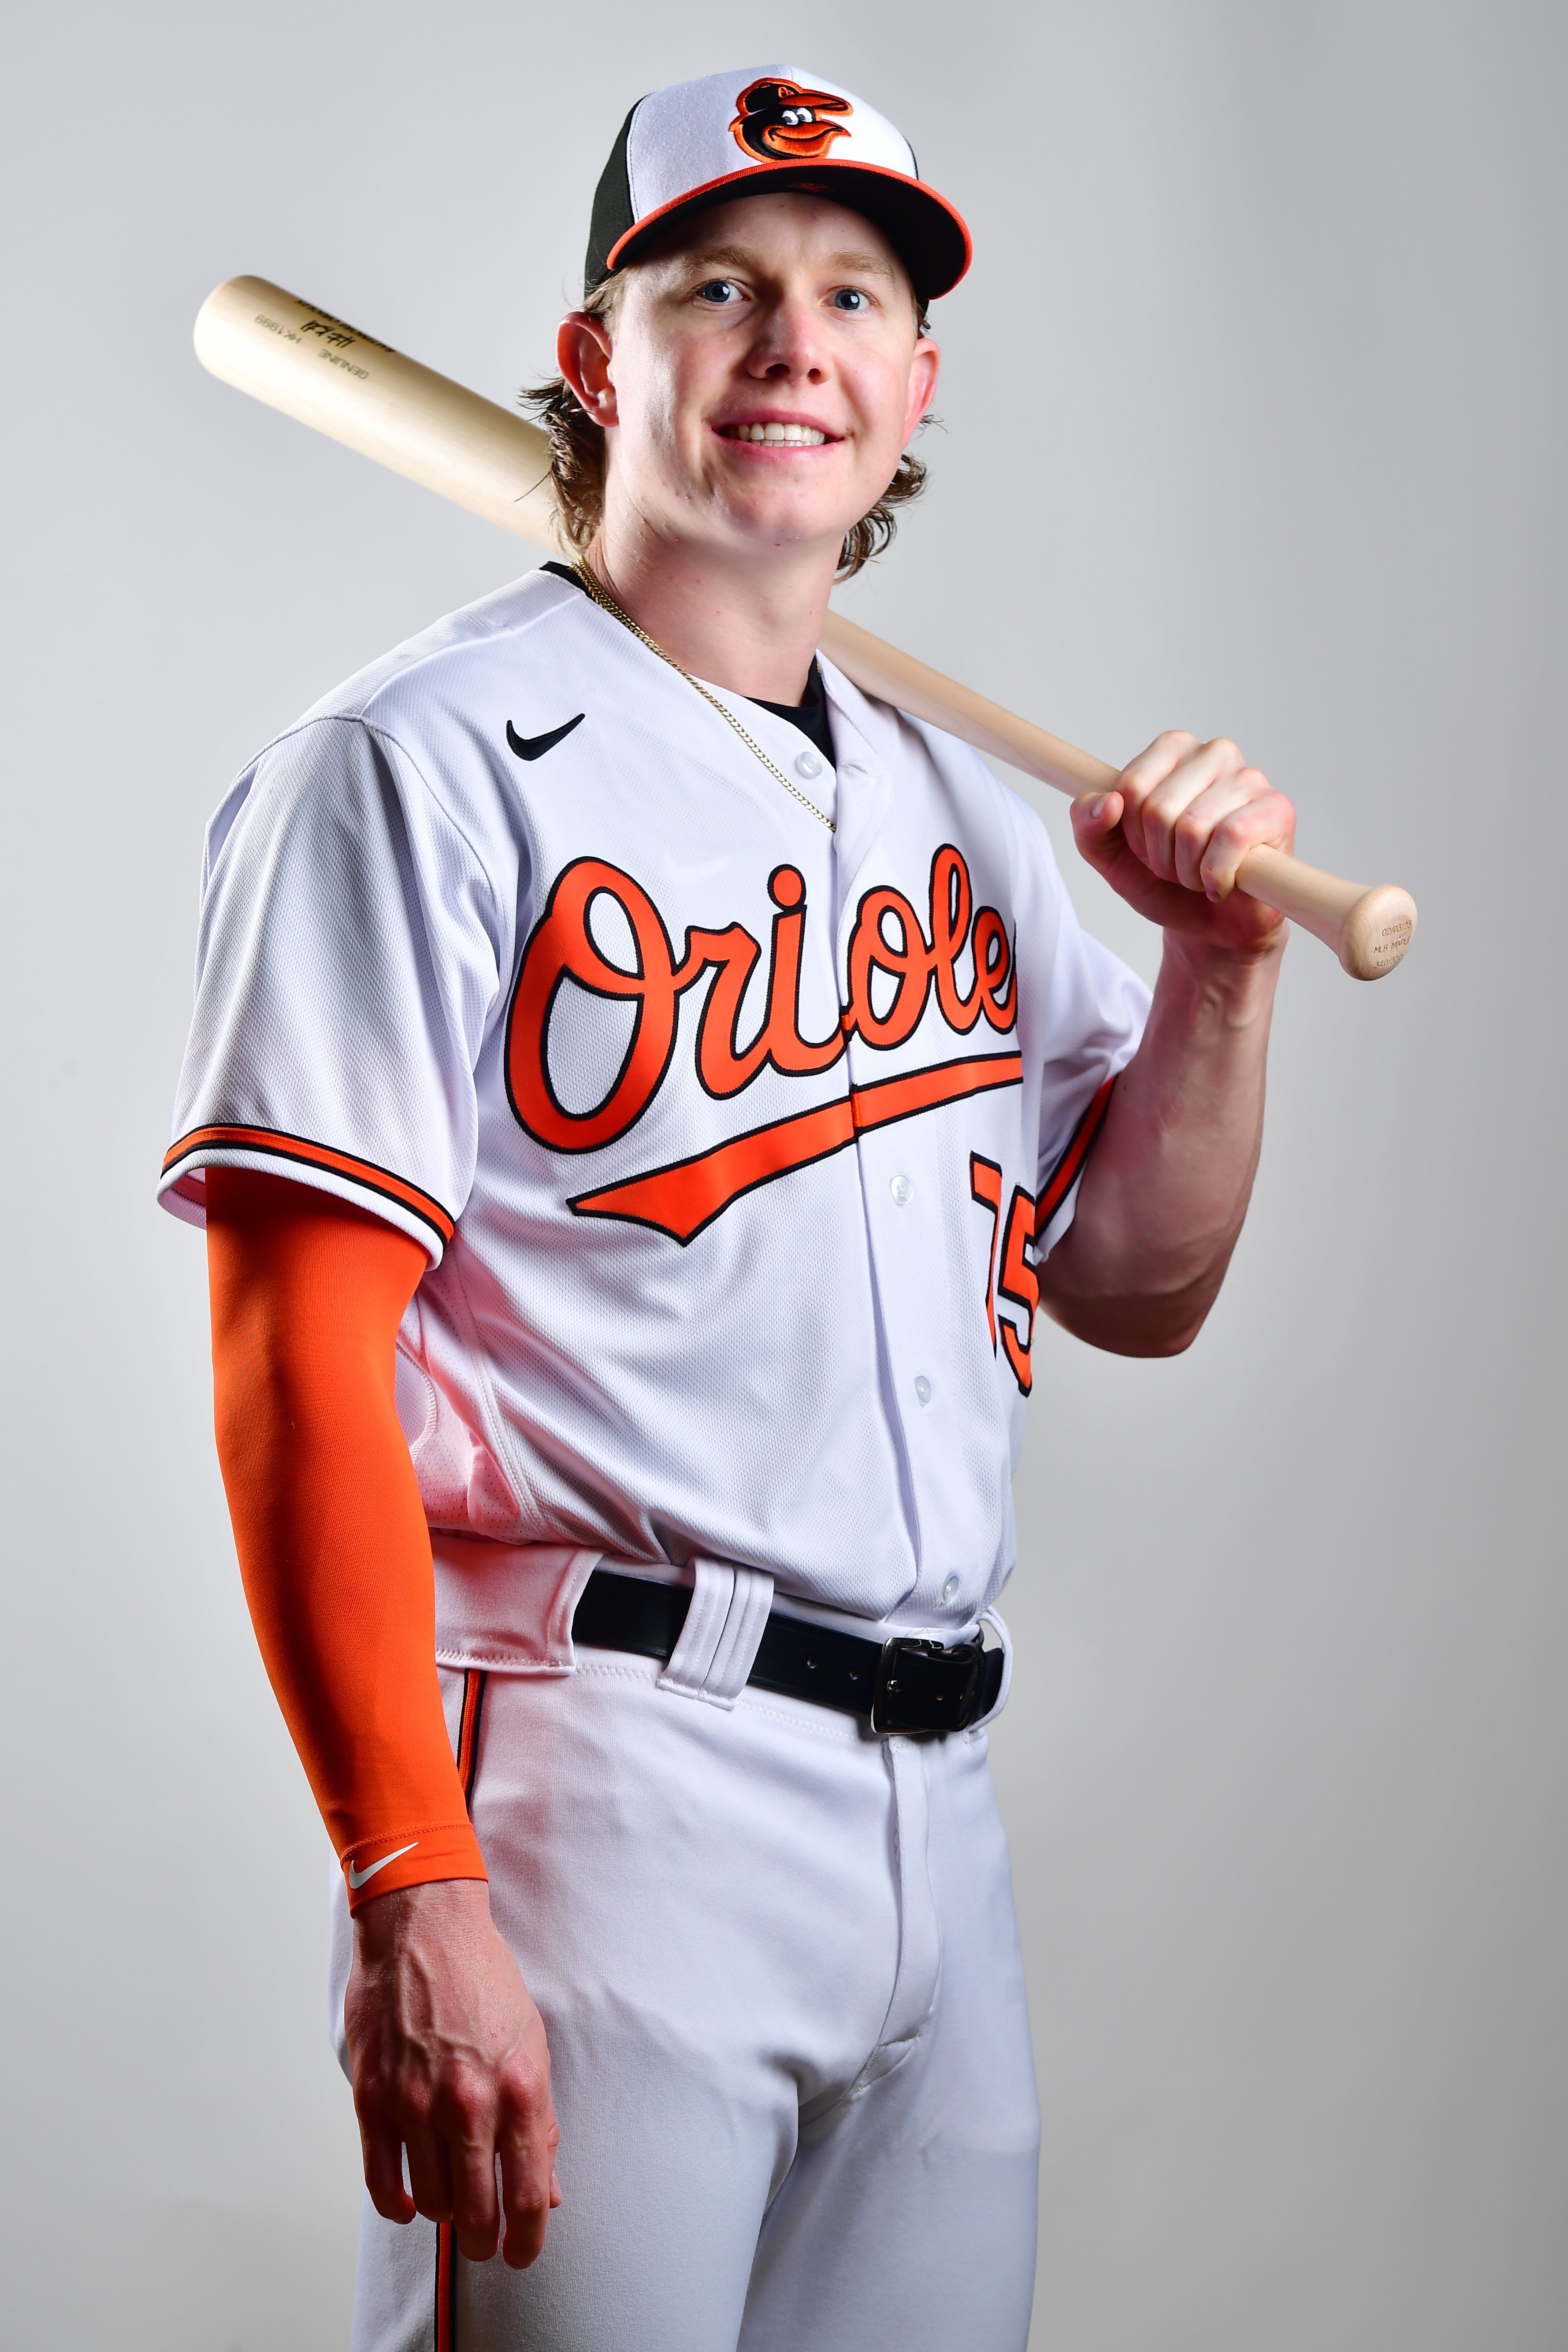 Orioles prospect Heston Kjerstad, wearing home whites, holding a baseball bat